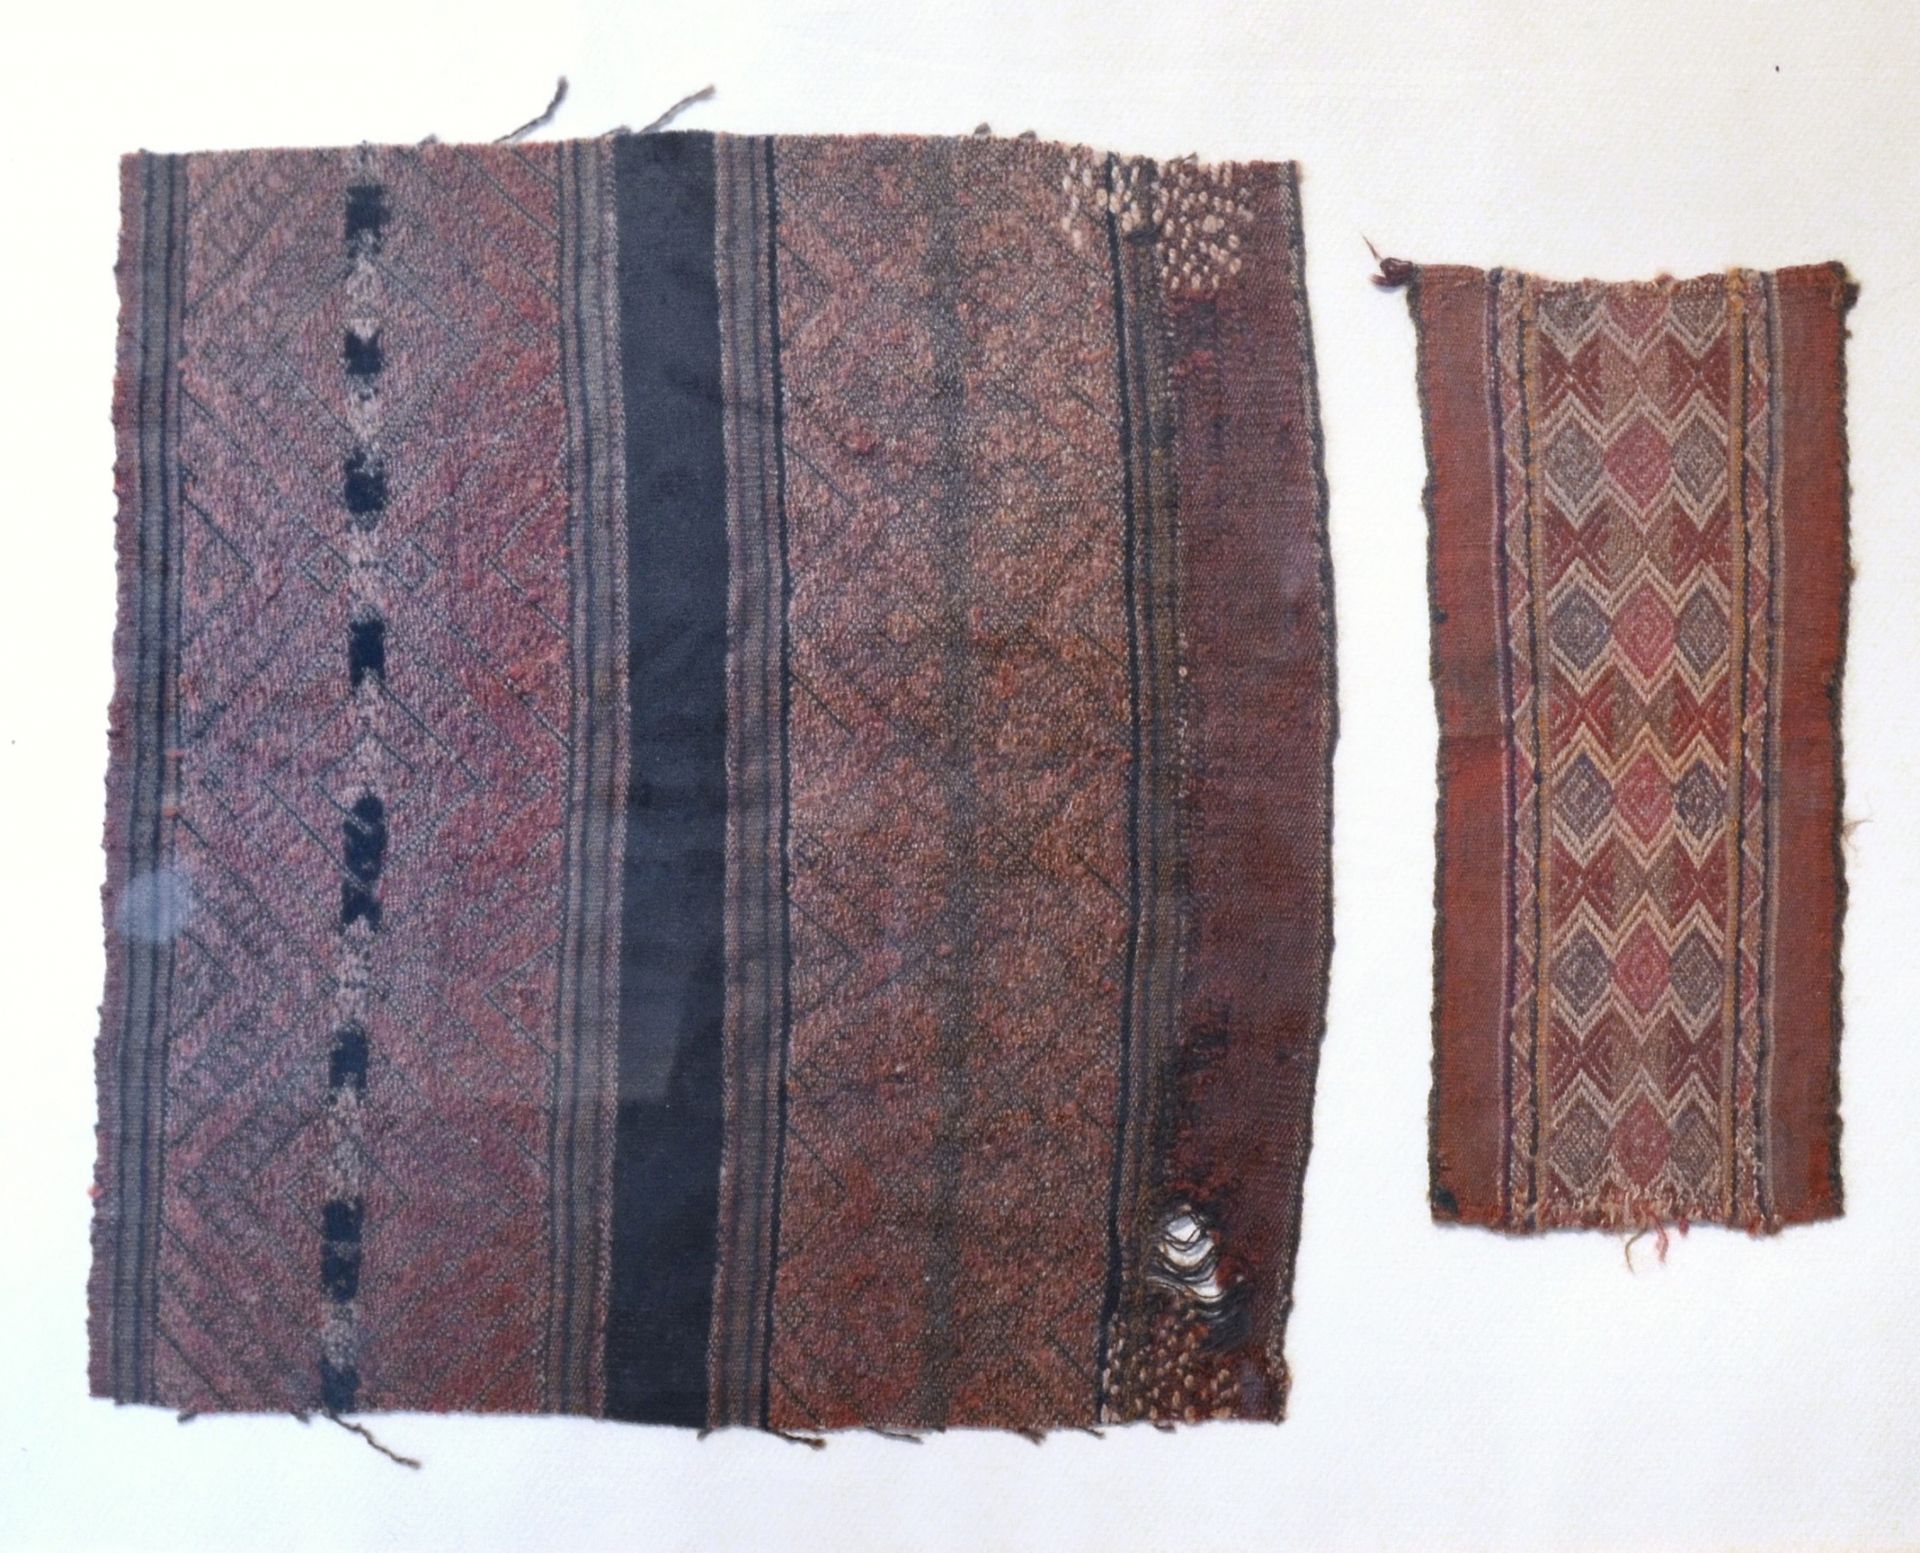 Deux fragments de tissu Ica, Perù, 1450-1532 d.C.

30,5 x 29 cm

22,5 x 10 cm